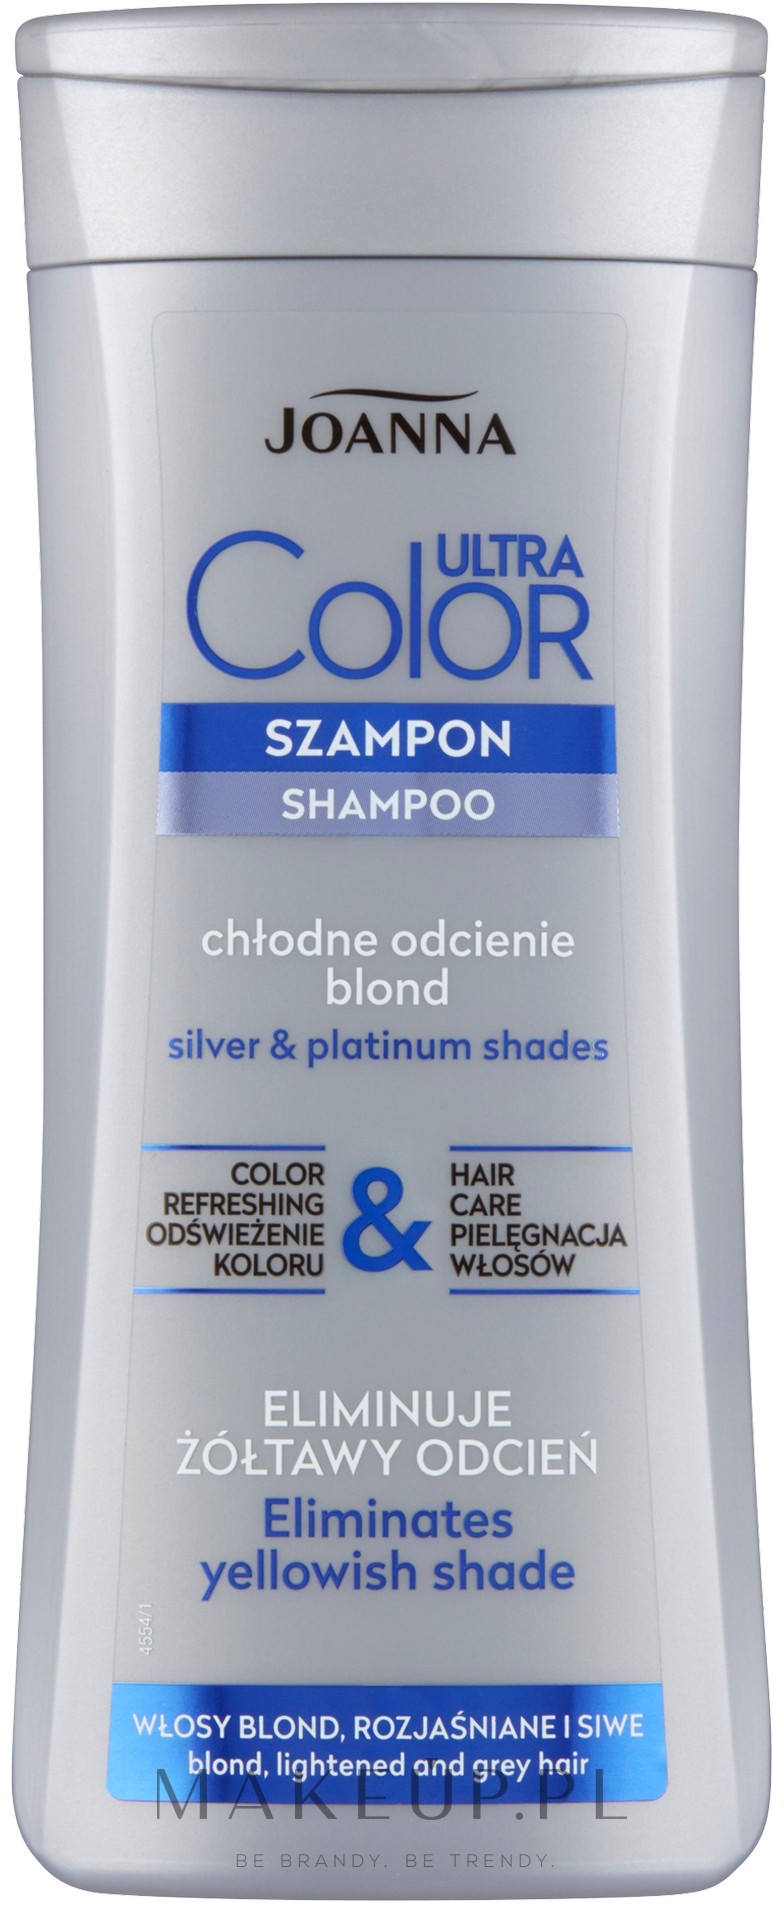 najlepszy szampon do włosów farbowanych rozjasnianych